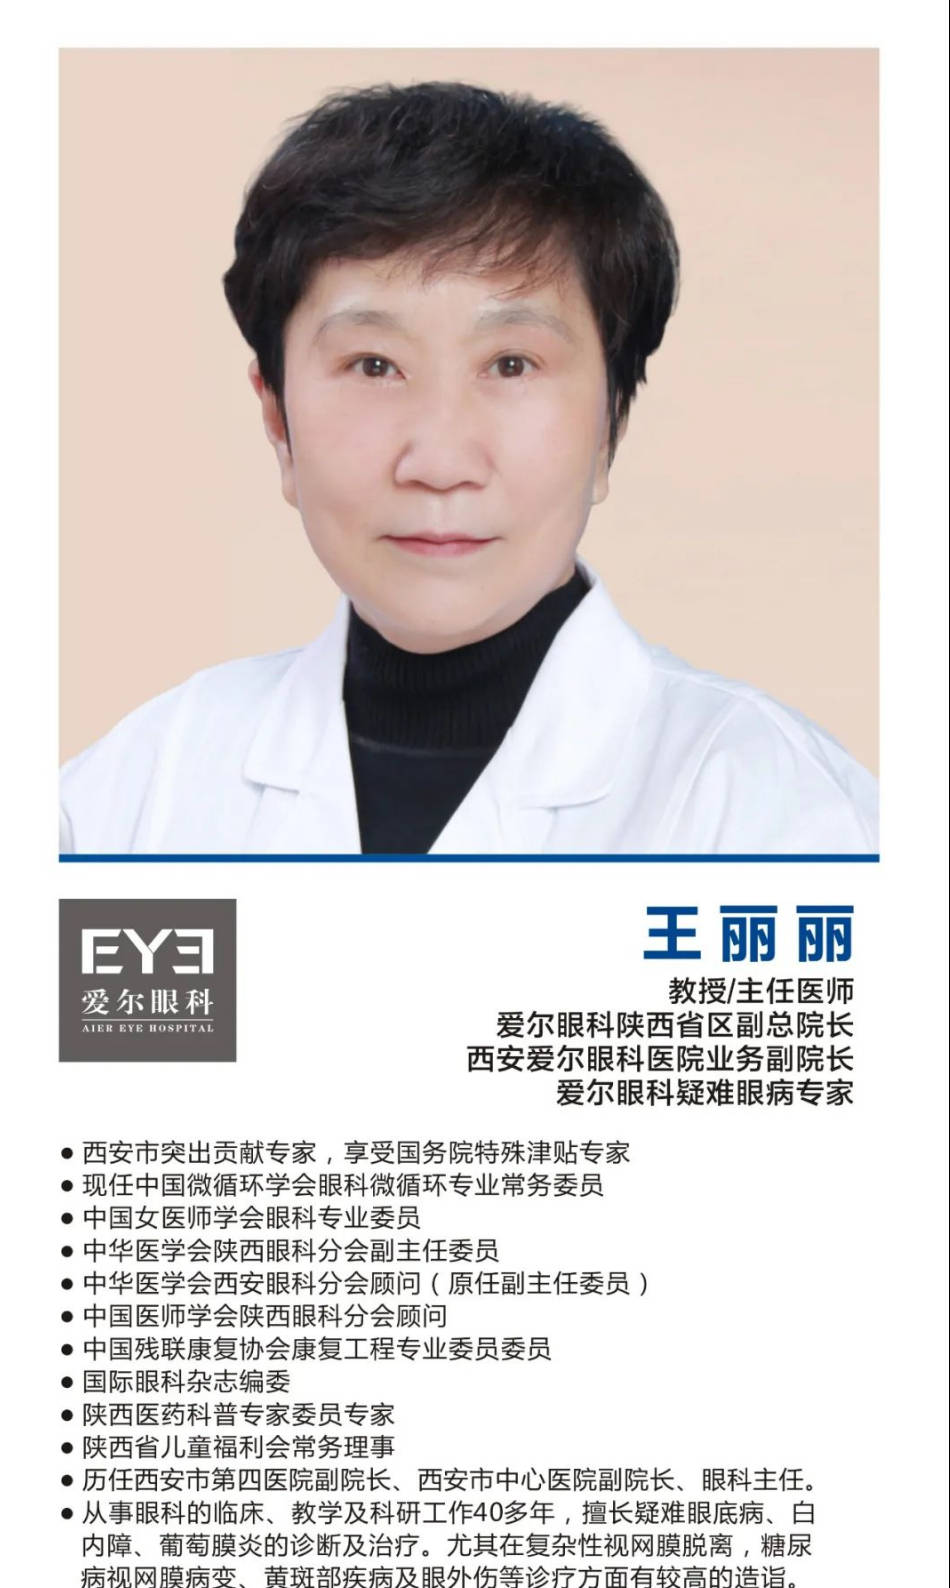 眼科大咖-王丽丽教授正式加盟西安爱尔眼科出任陕西省